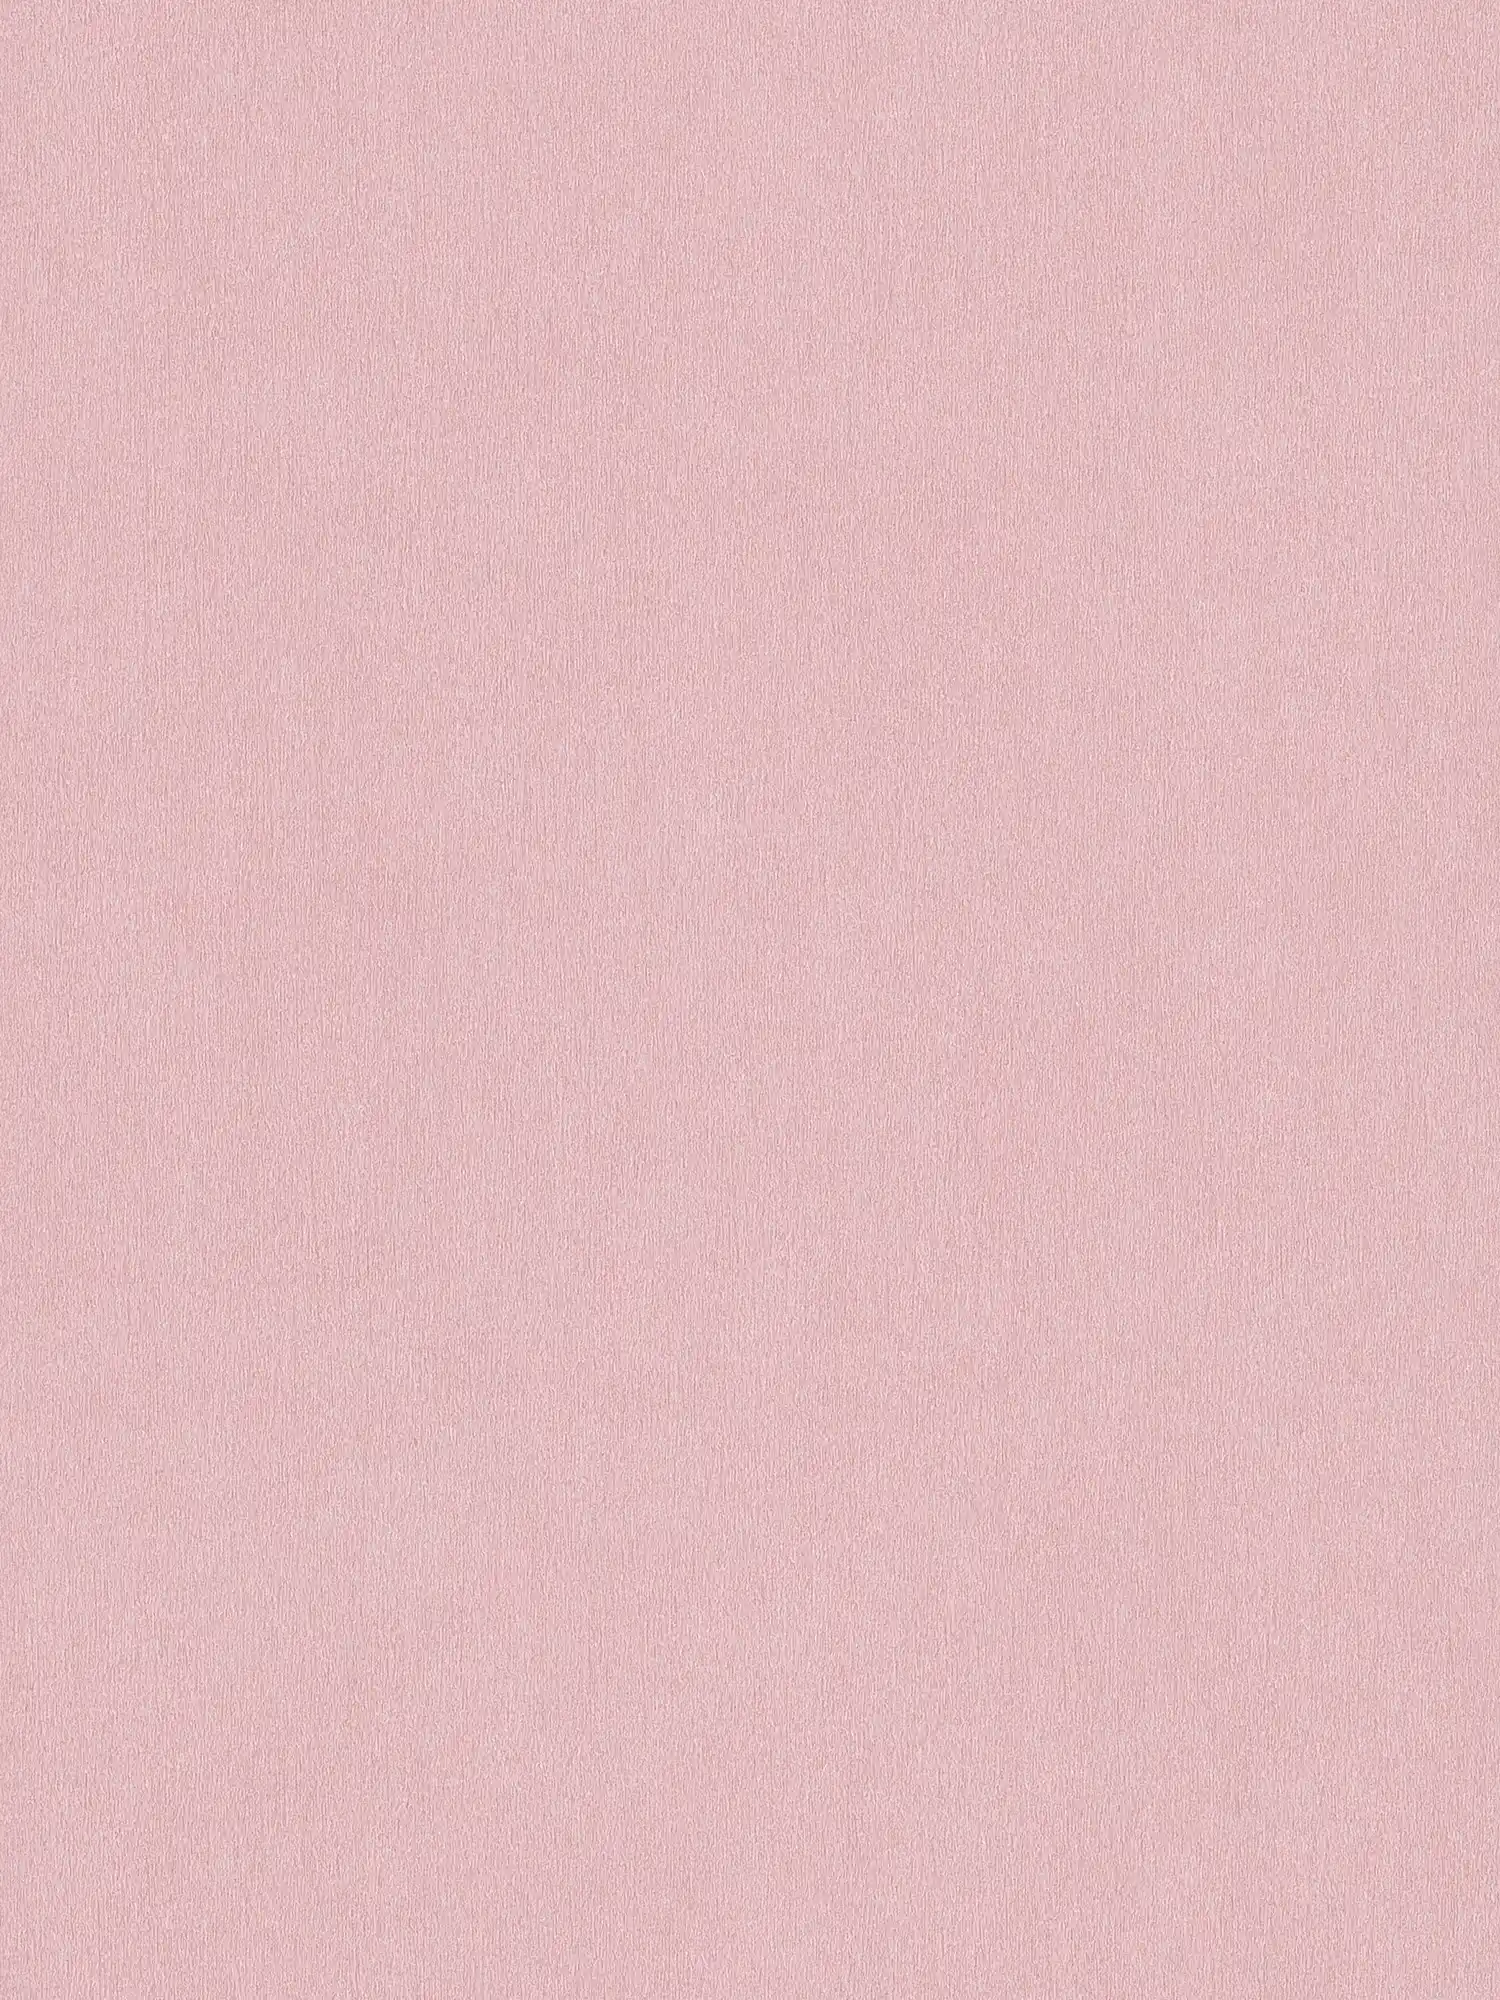 Roze behang effen met kleur arceringen
